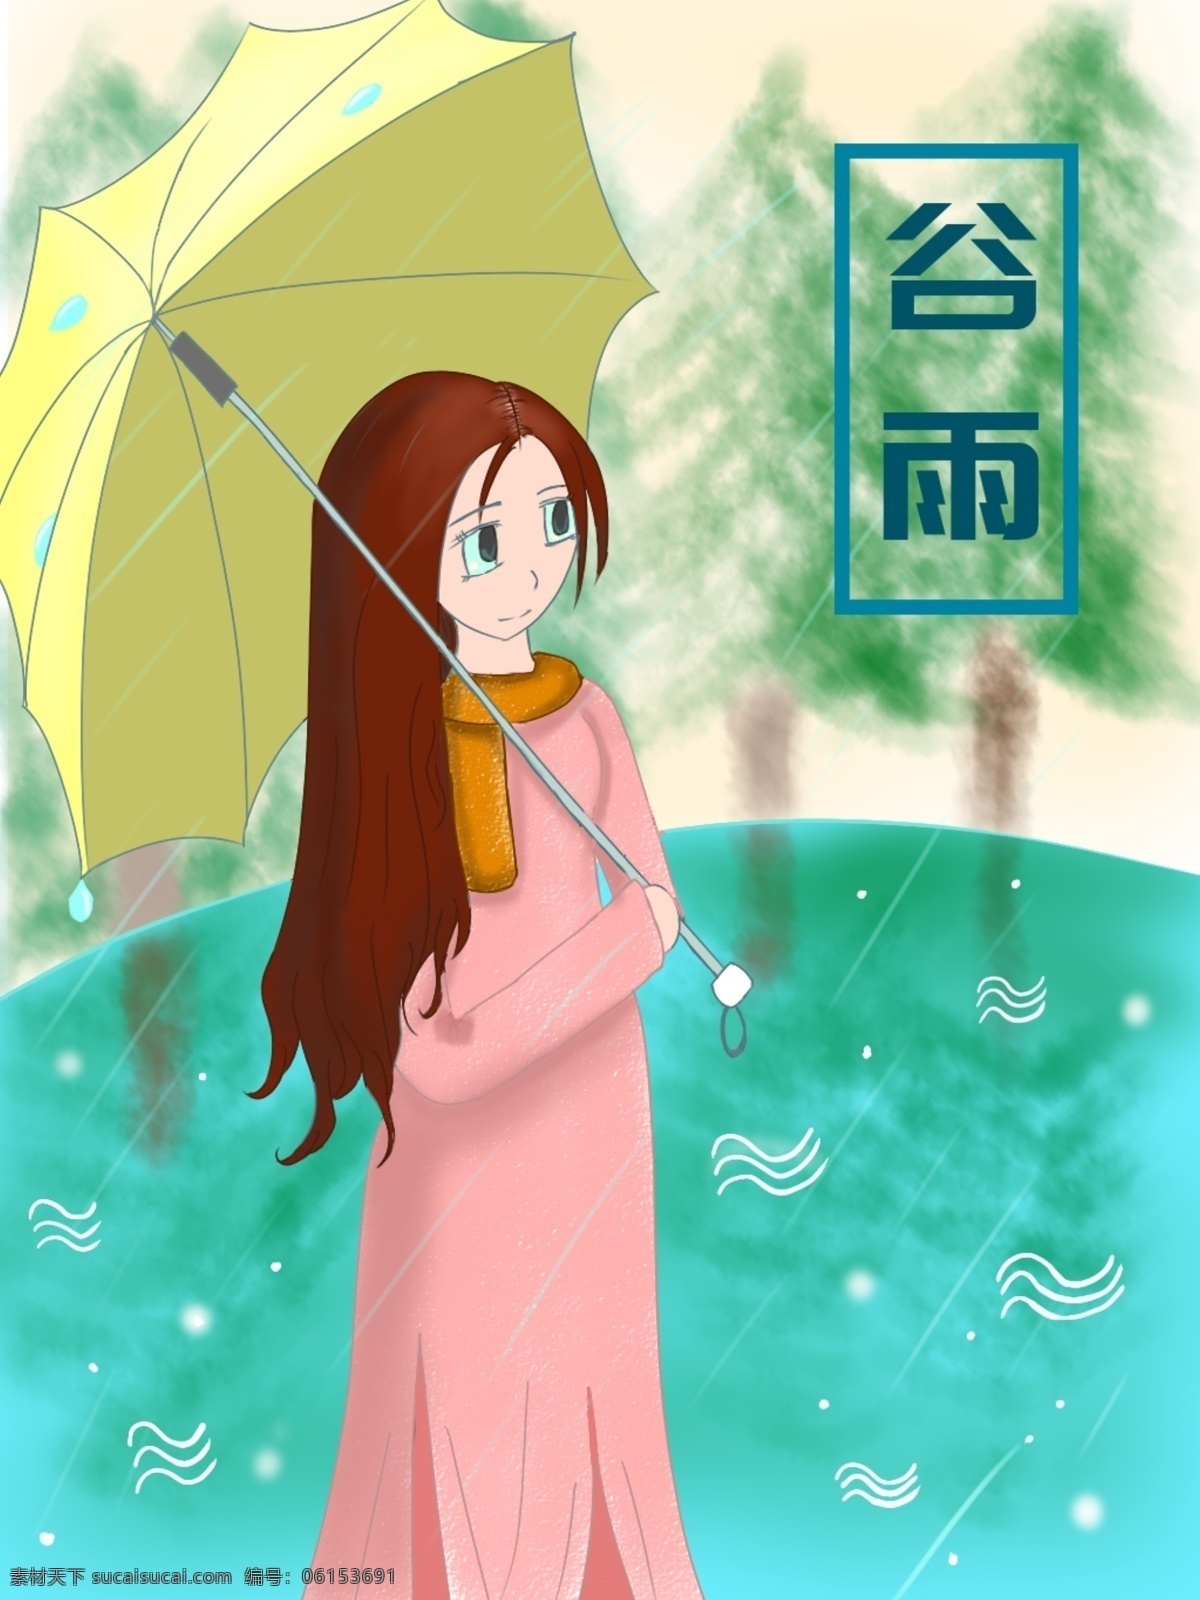 原创 手绘 谷雨 节气 女孩 撑伞 插画 湖水 下雨 湖边